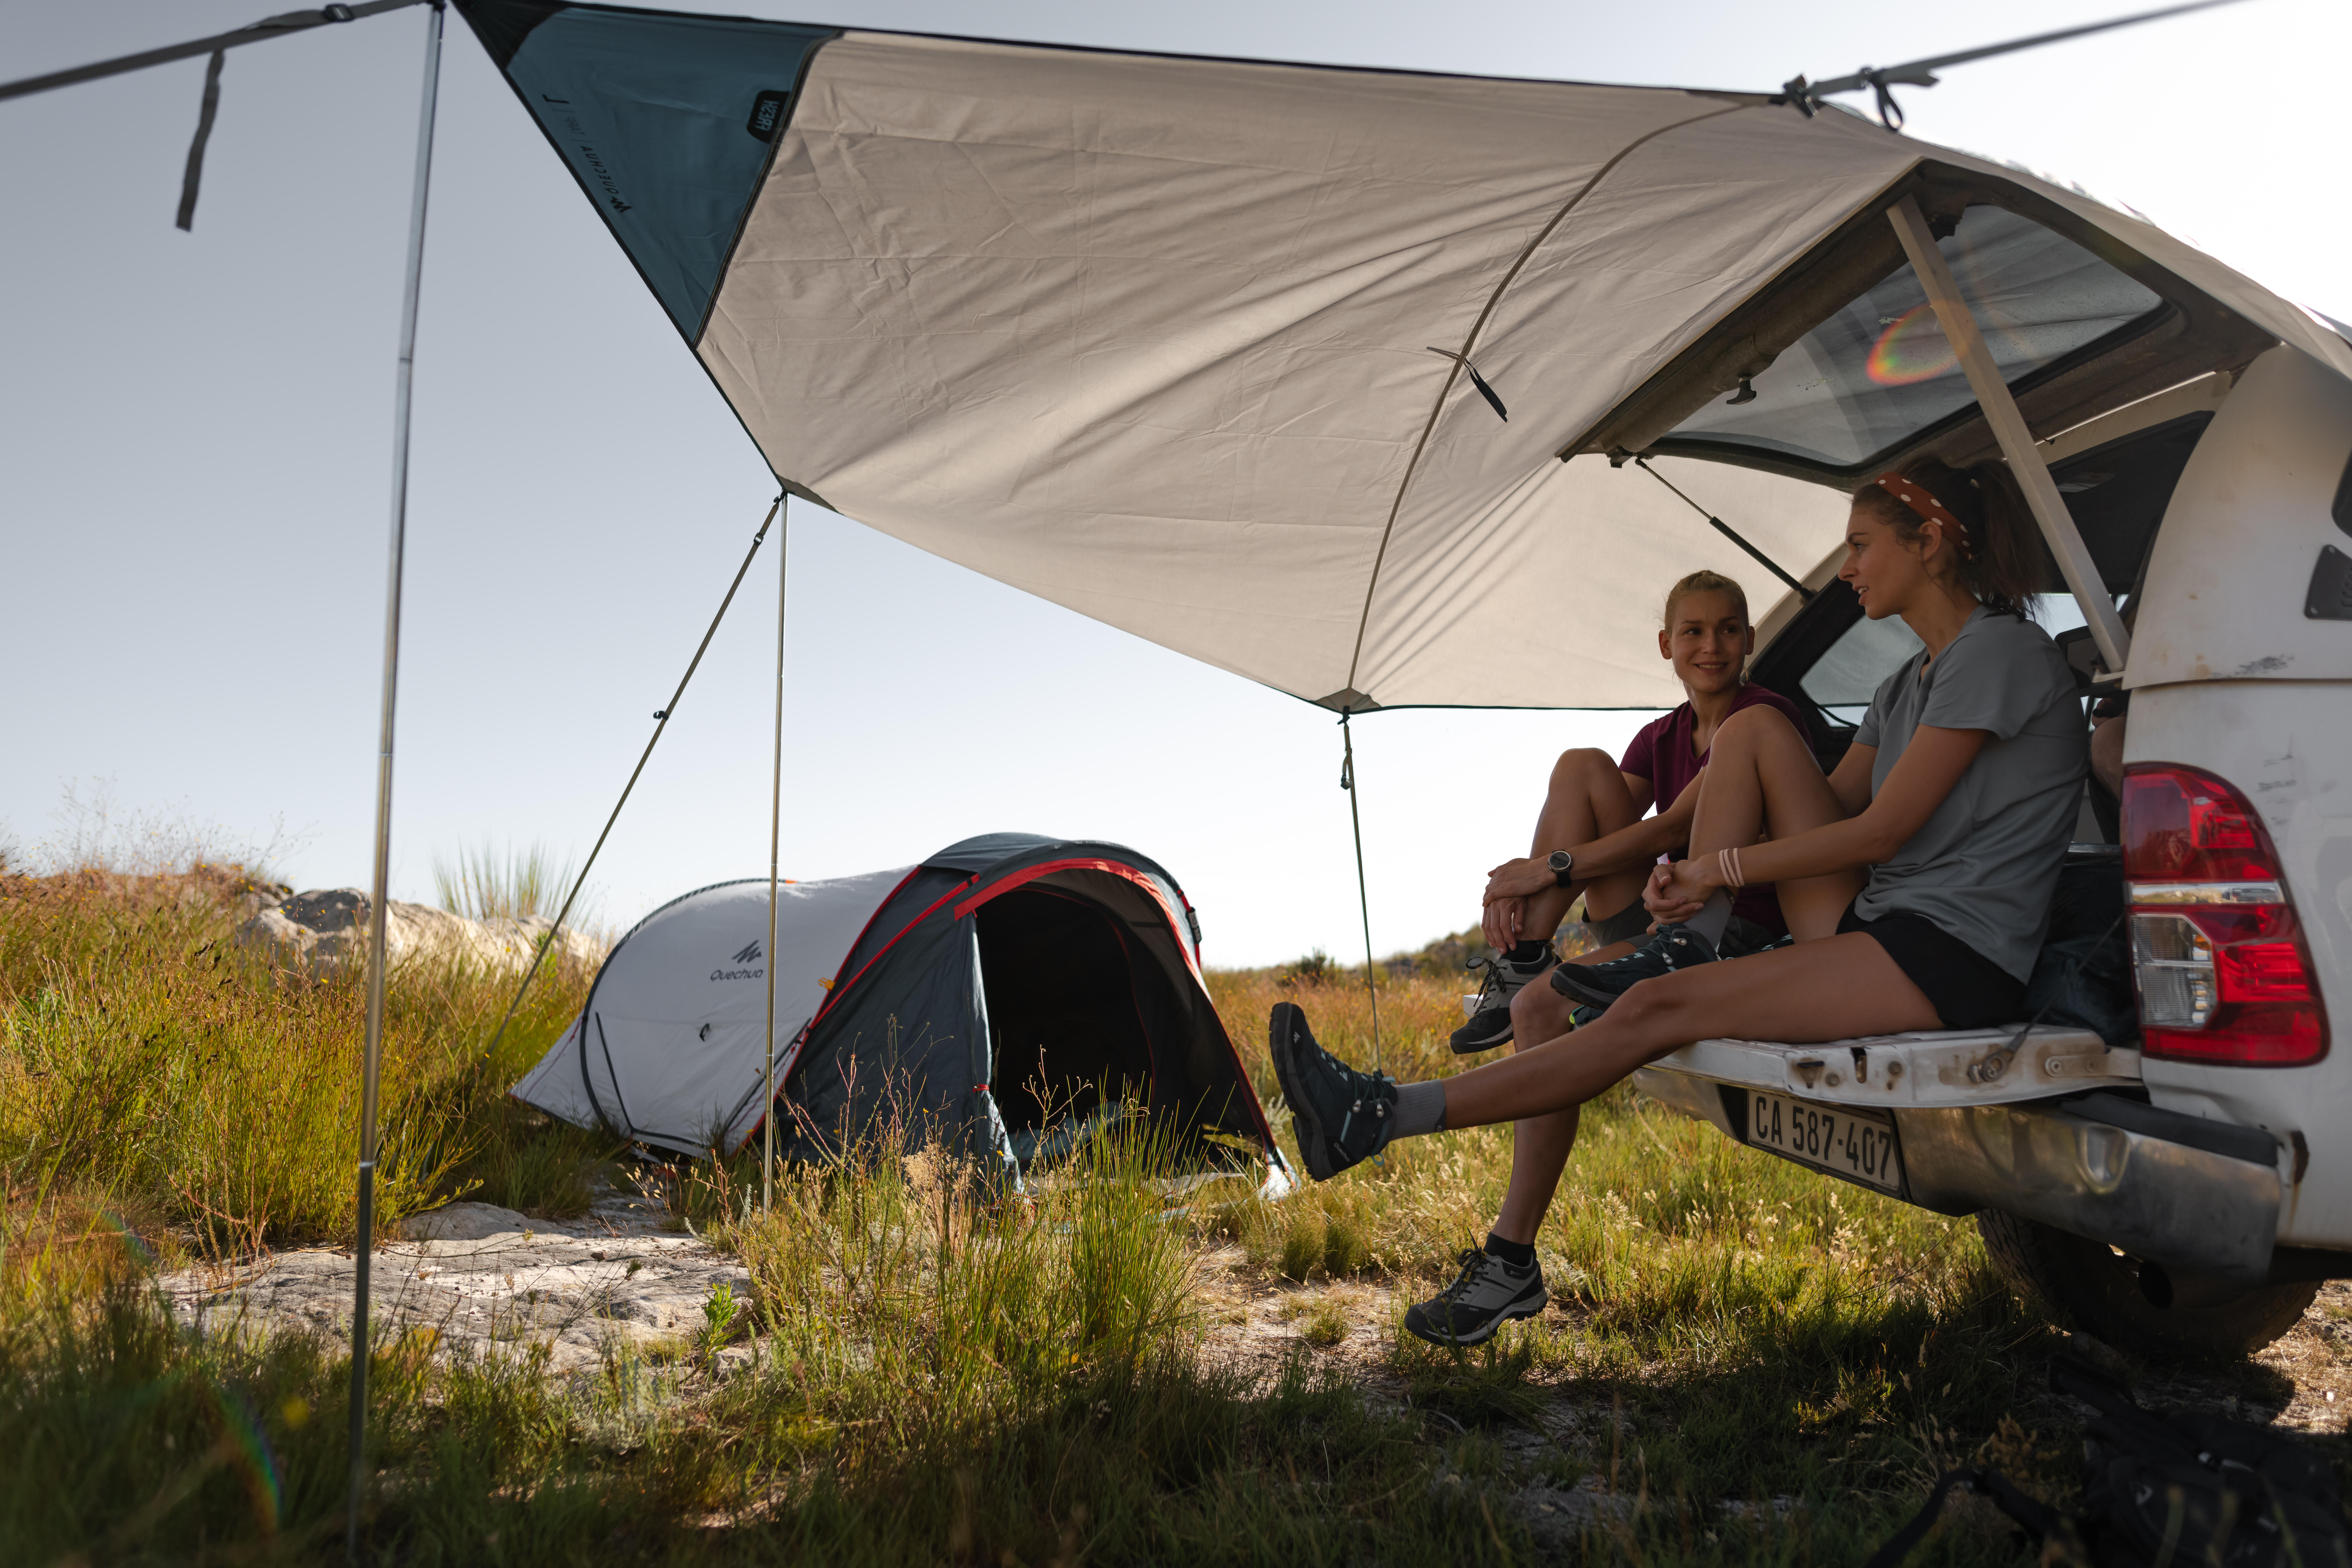 decathlon camping shelter